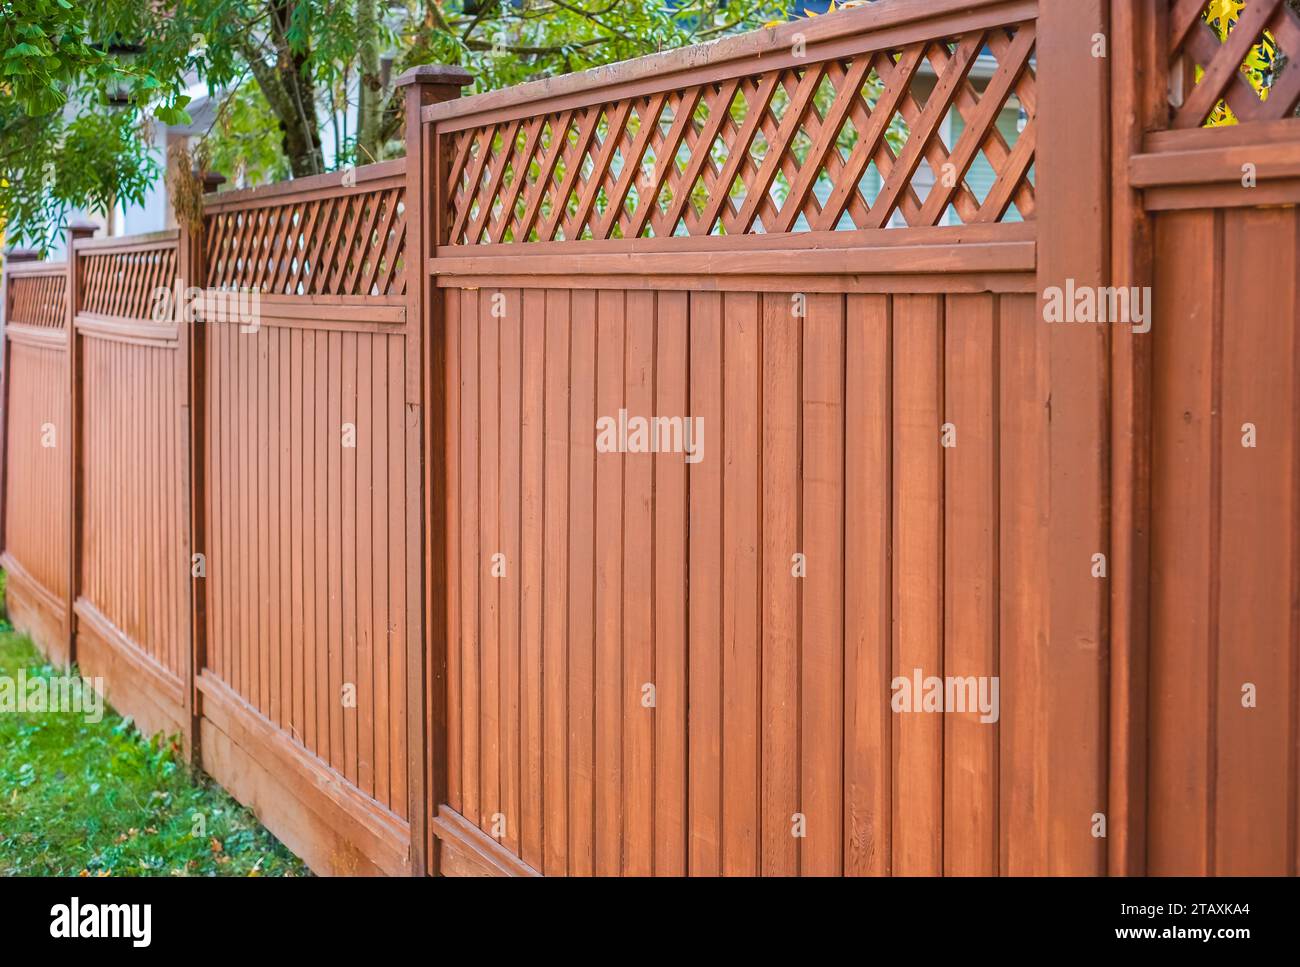 Belle clôture en bois autour de la maison. Clôture en bois avec pelouse verte. Photo de rue, personne, mise au point sélective Banque D'Images